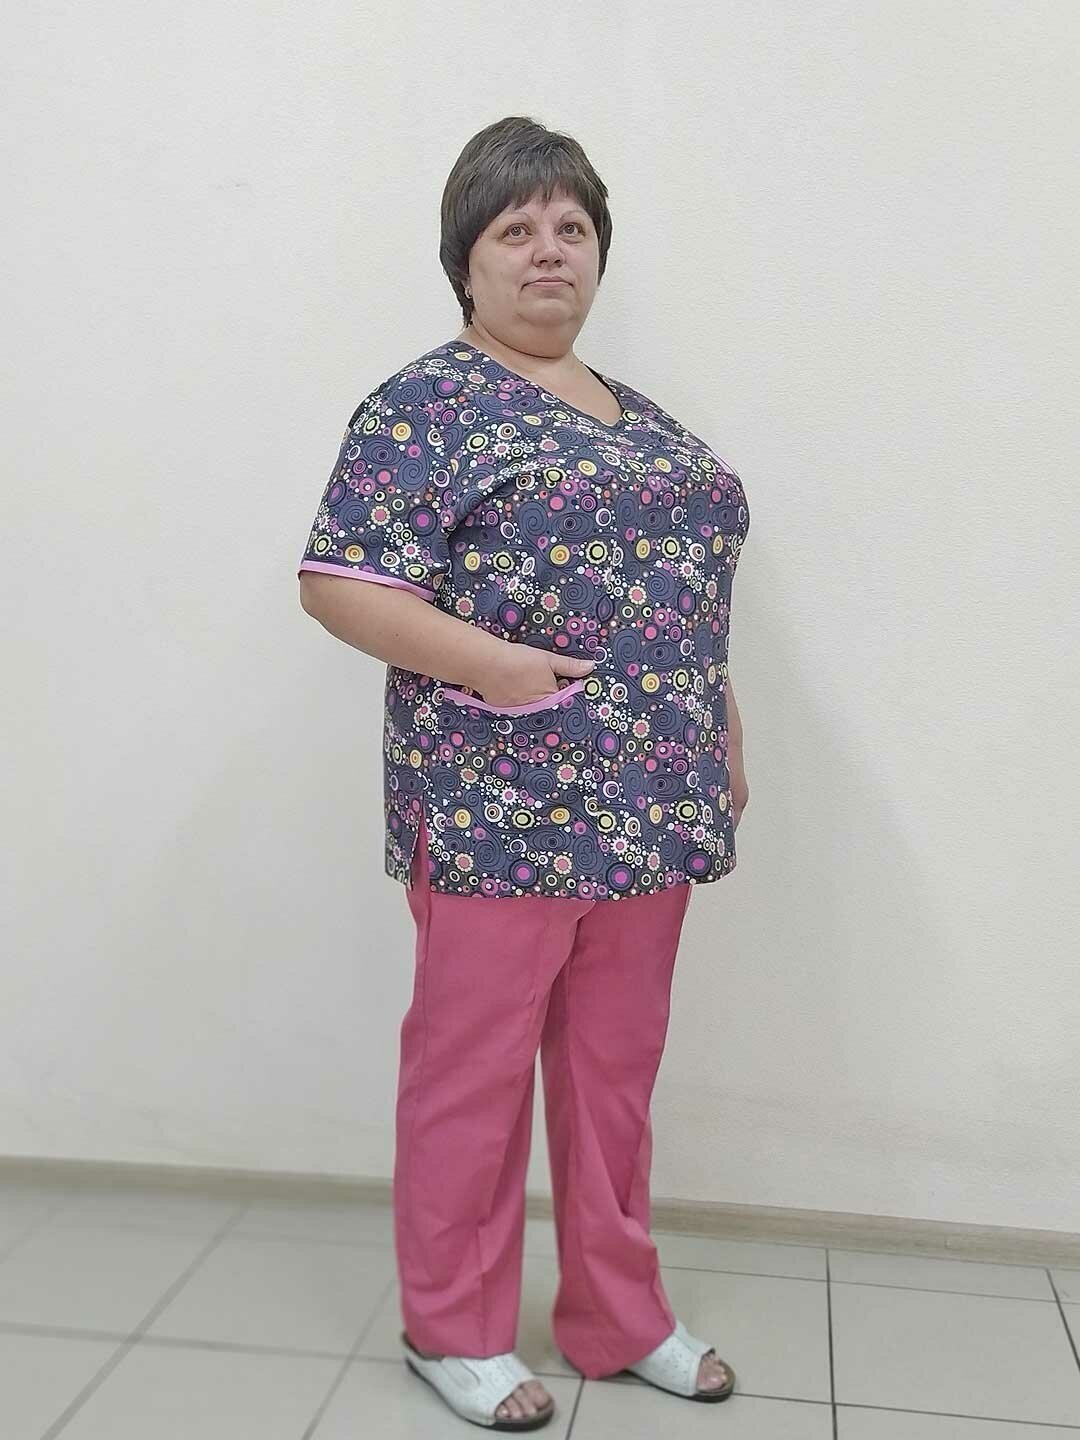 Блуза женская, производитель Фабрика швейных изделий №3, модель М-550, рост 164, размер 56, цвет набивной рисунок разноцветными кружочками